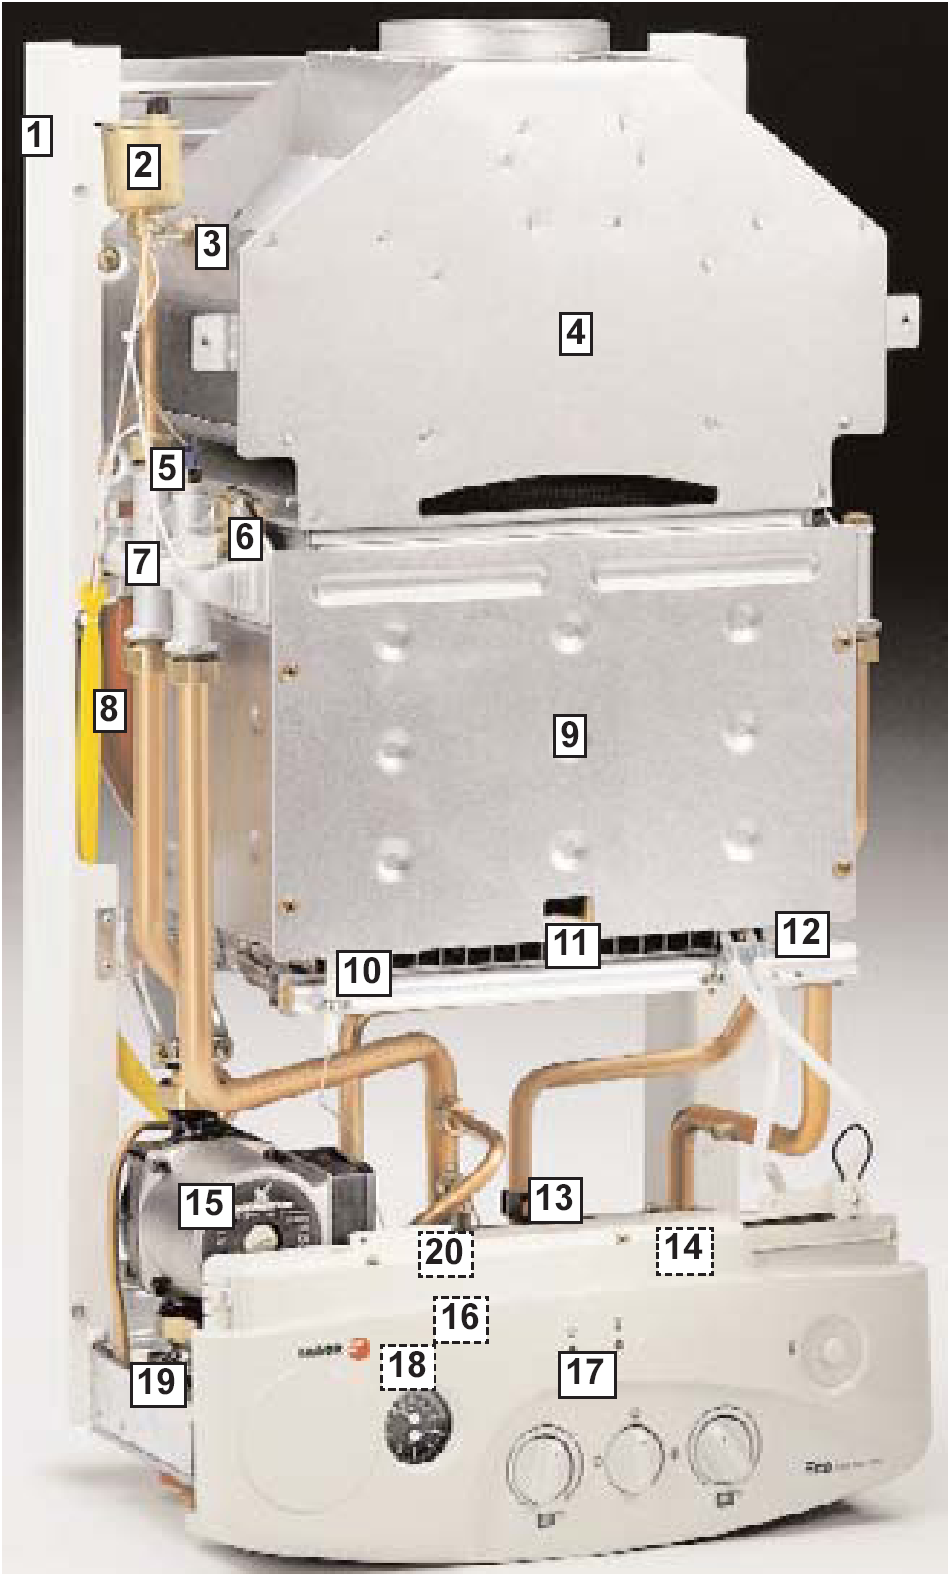 1.- A KÉSZÜLÉK LEÍRÁSA Teljesítmény modulátorral rendelkező, nyitott égésterű és természetes szellőzésű fali gázkazán, fűtés és melegvíz szolgáltatásához. Fő alkotórészei a következők: 1.- Test 2.